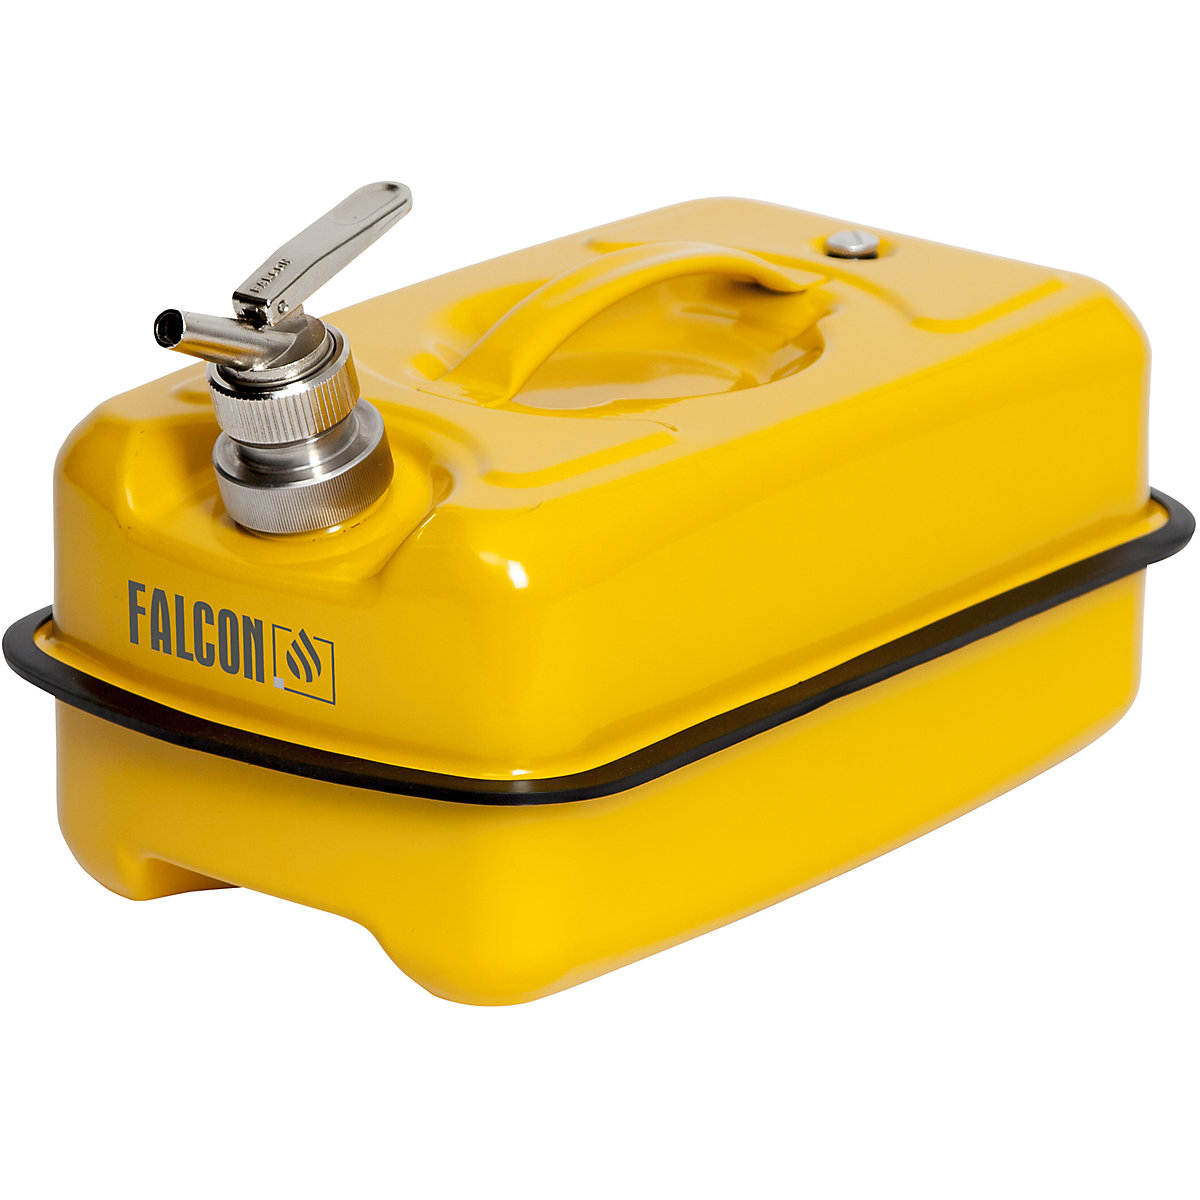 FALCON – Canistră de siguranță plată cu robinet pentru dozare fină, tablă de oțel, capacitate 10 l